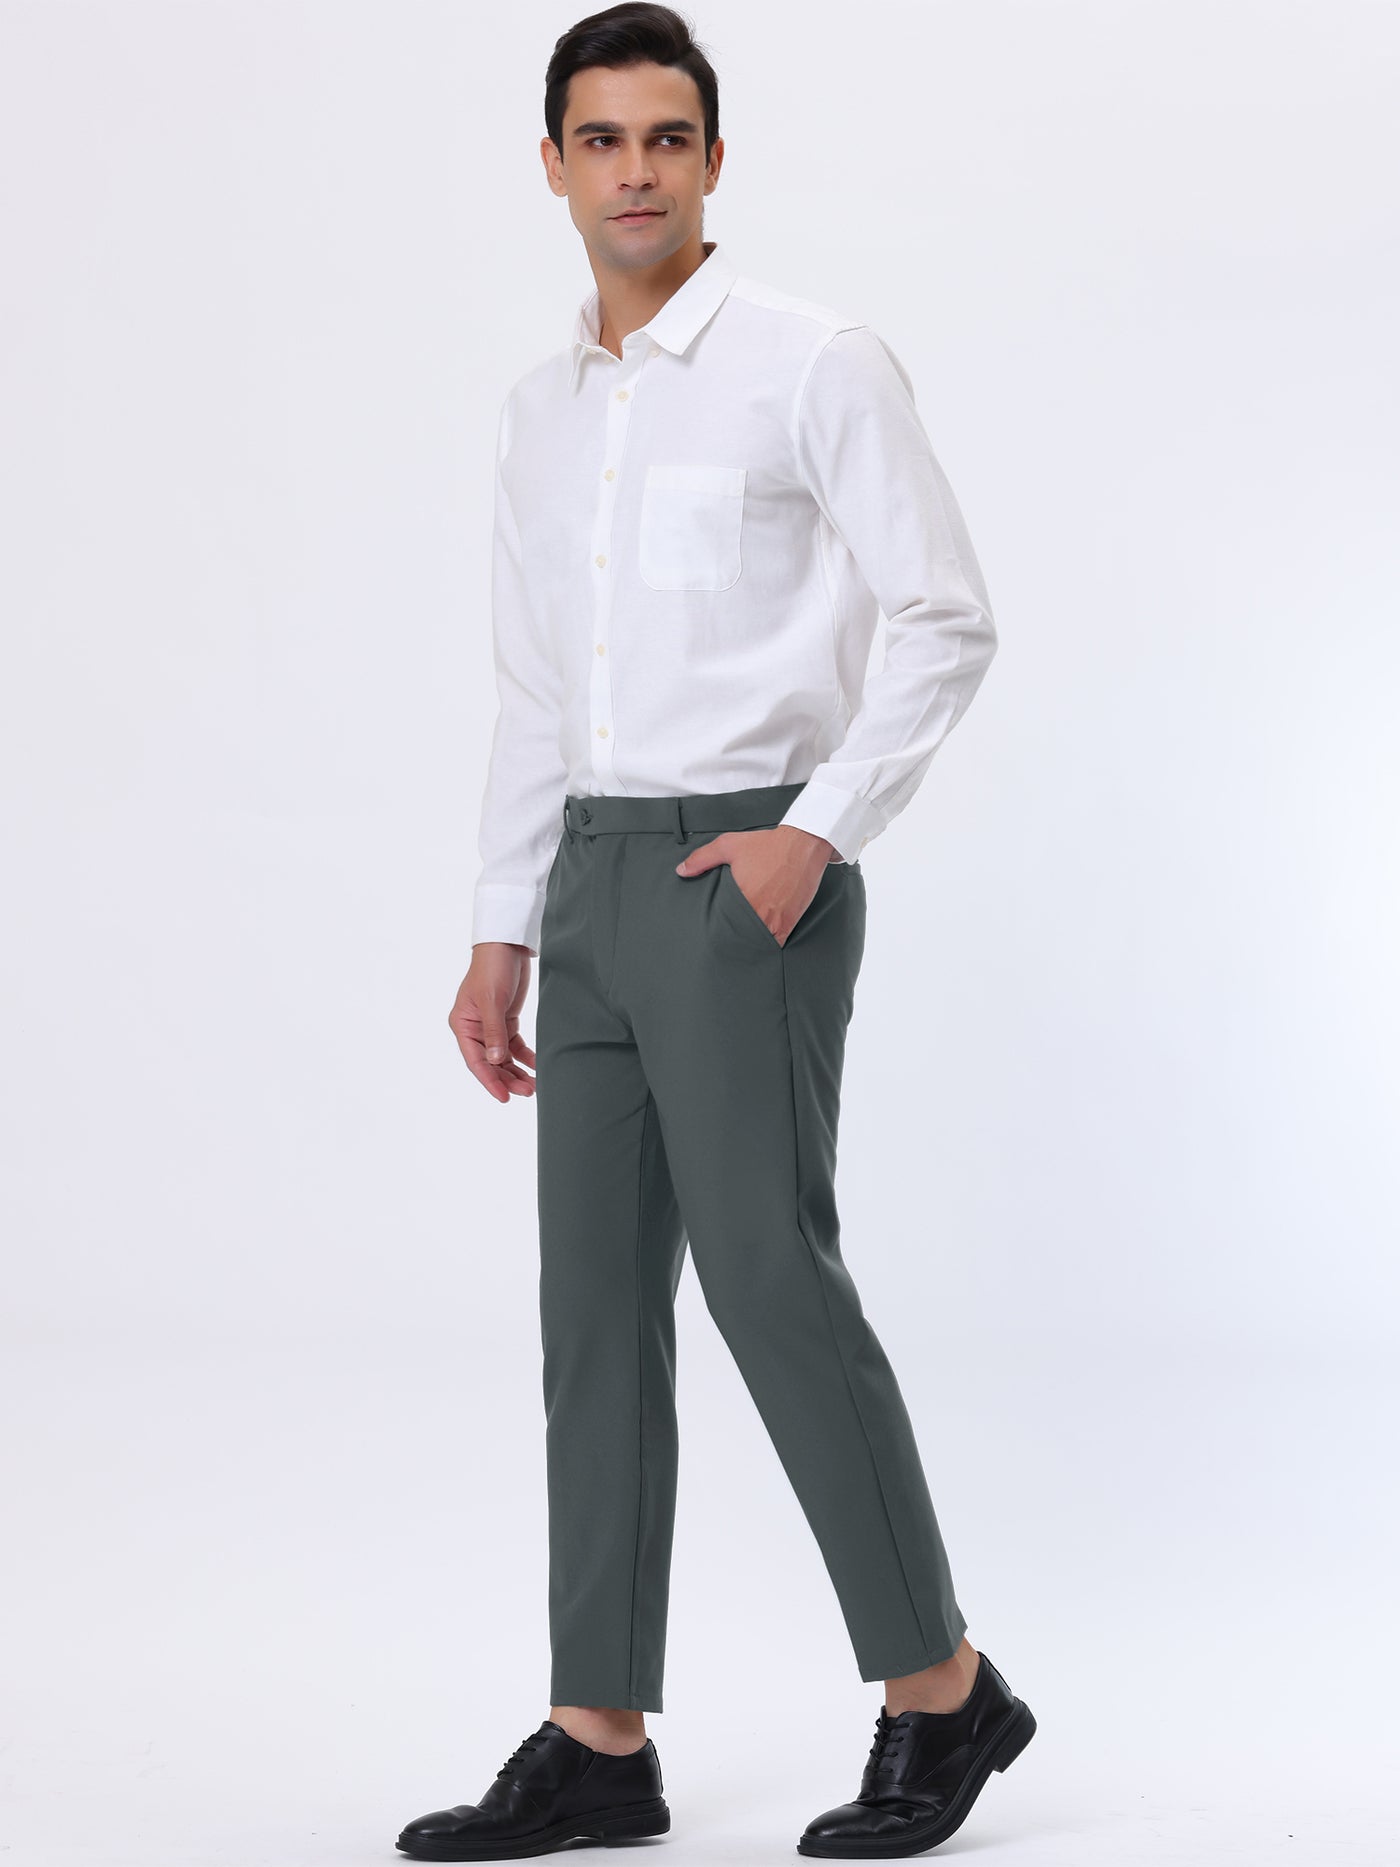 Bublédon Flat Front Solid Color Crop Ankle-Length Dress Pants